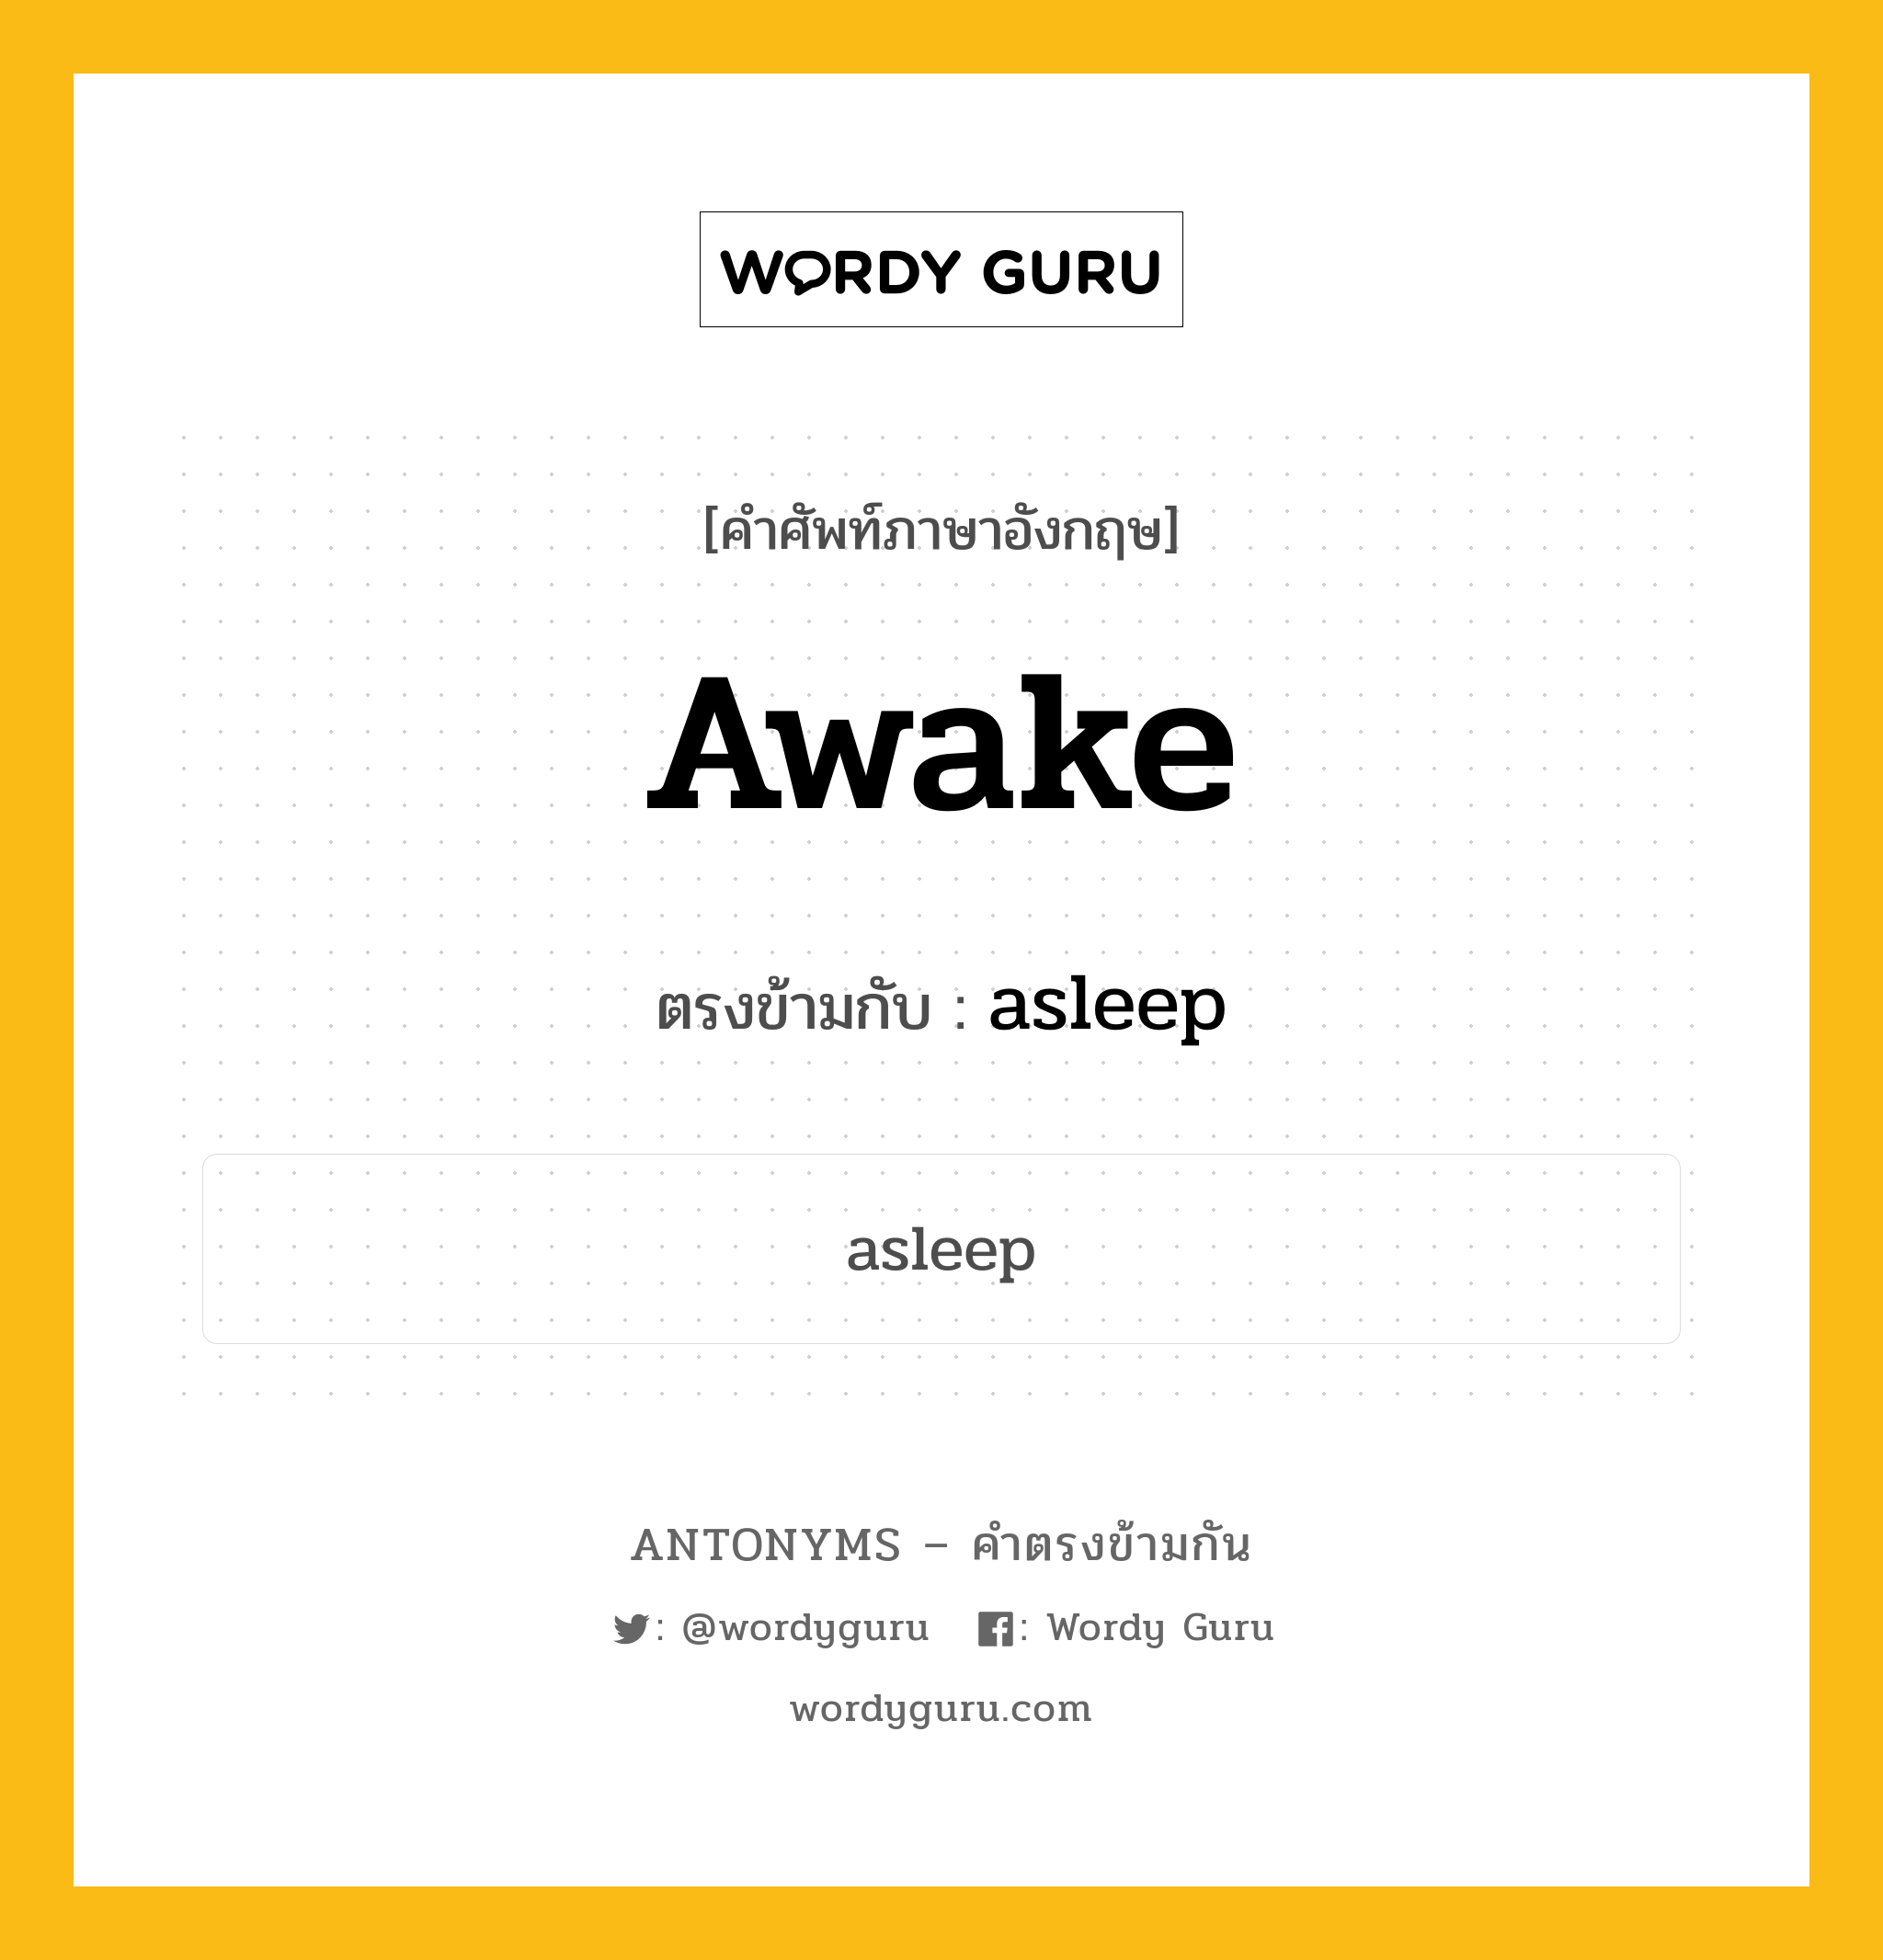 awake เป็นคำตรงข้ามกับคำไหนบ้าง?, คำศัพท์ภาษาอังกฤษ awake ตรงข้ามกับ asleep หมวด asleep